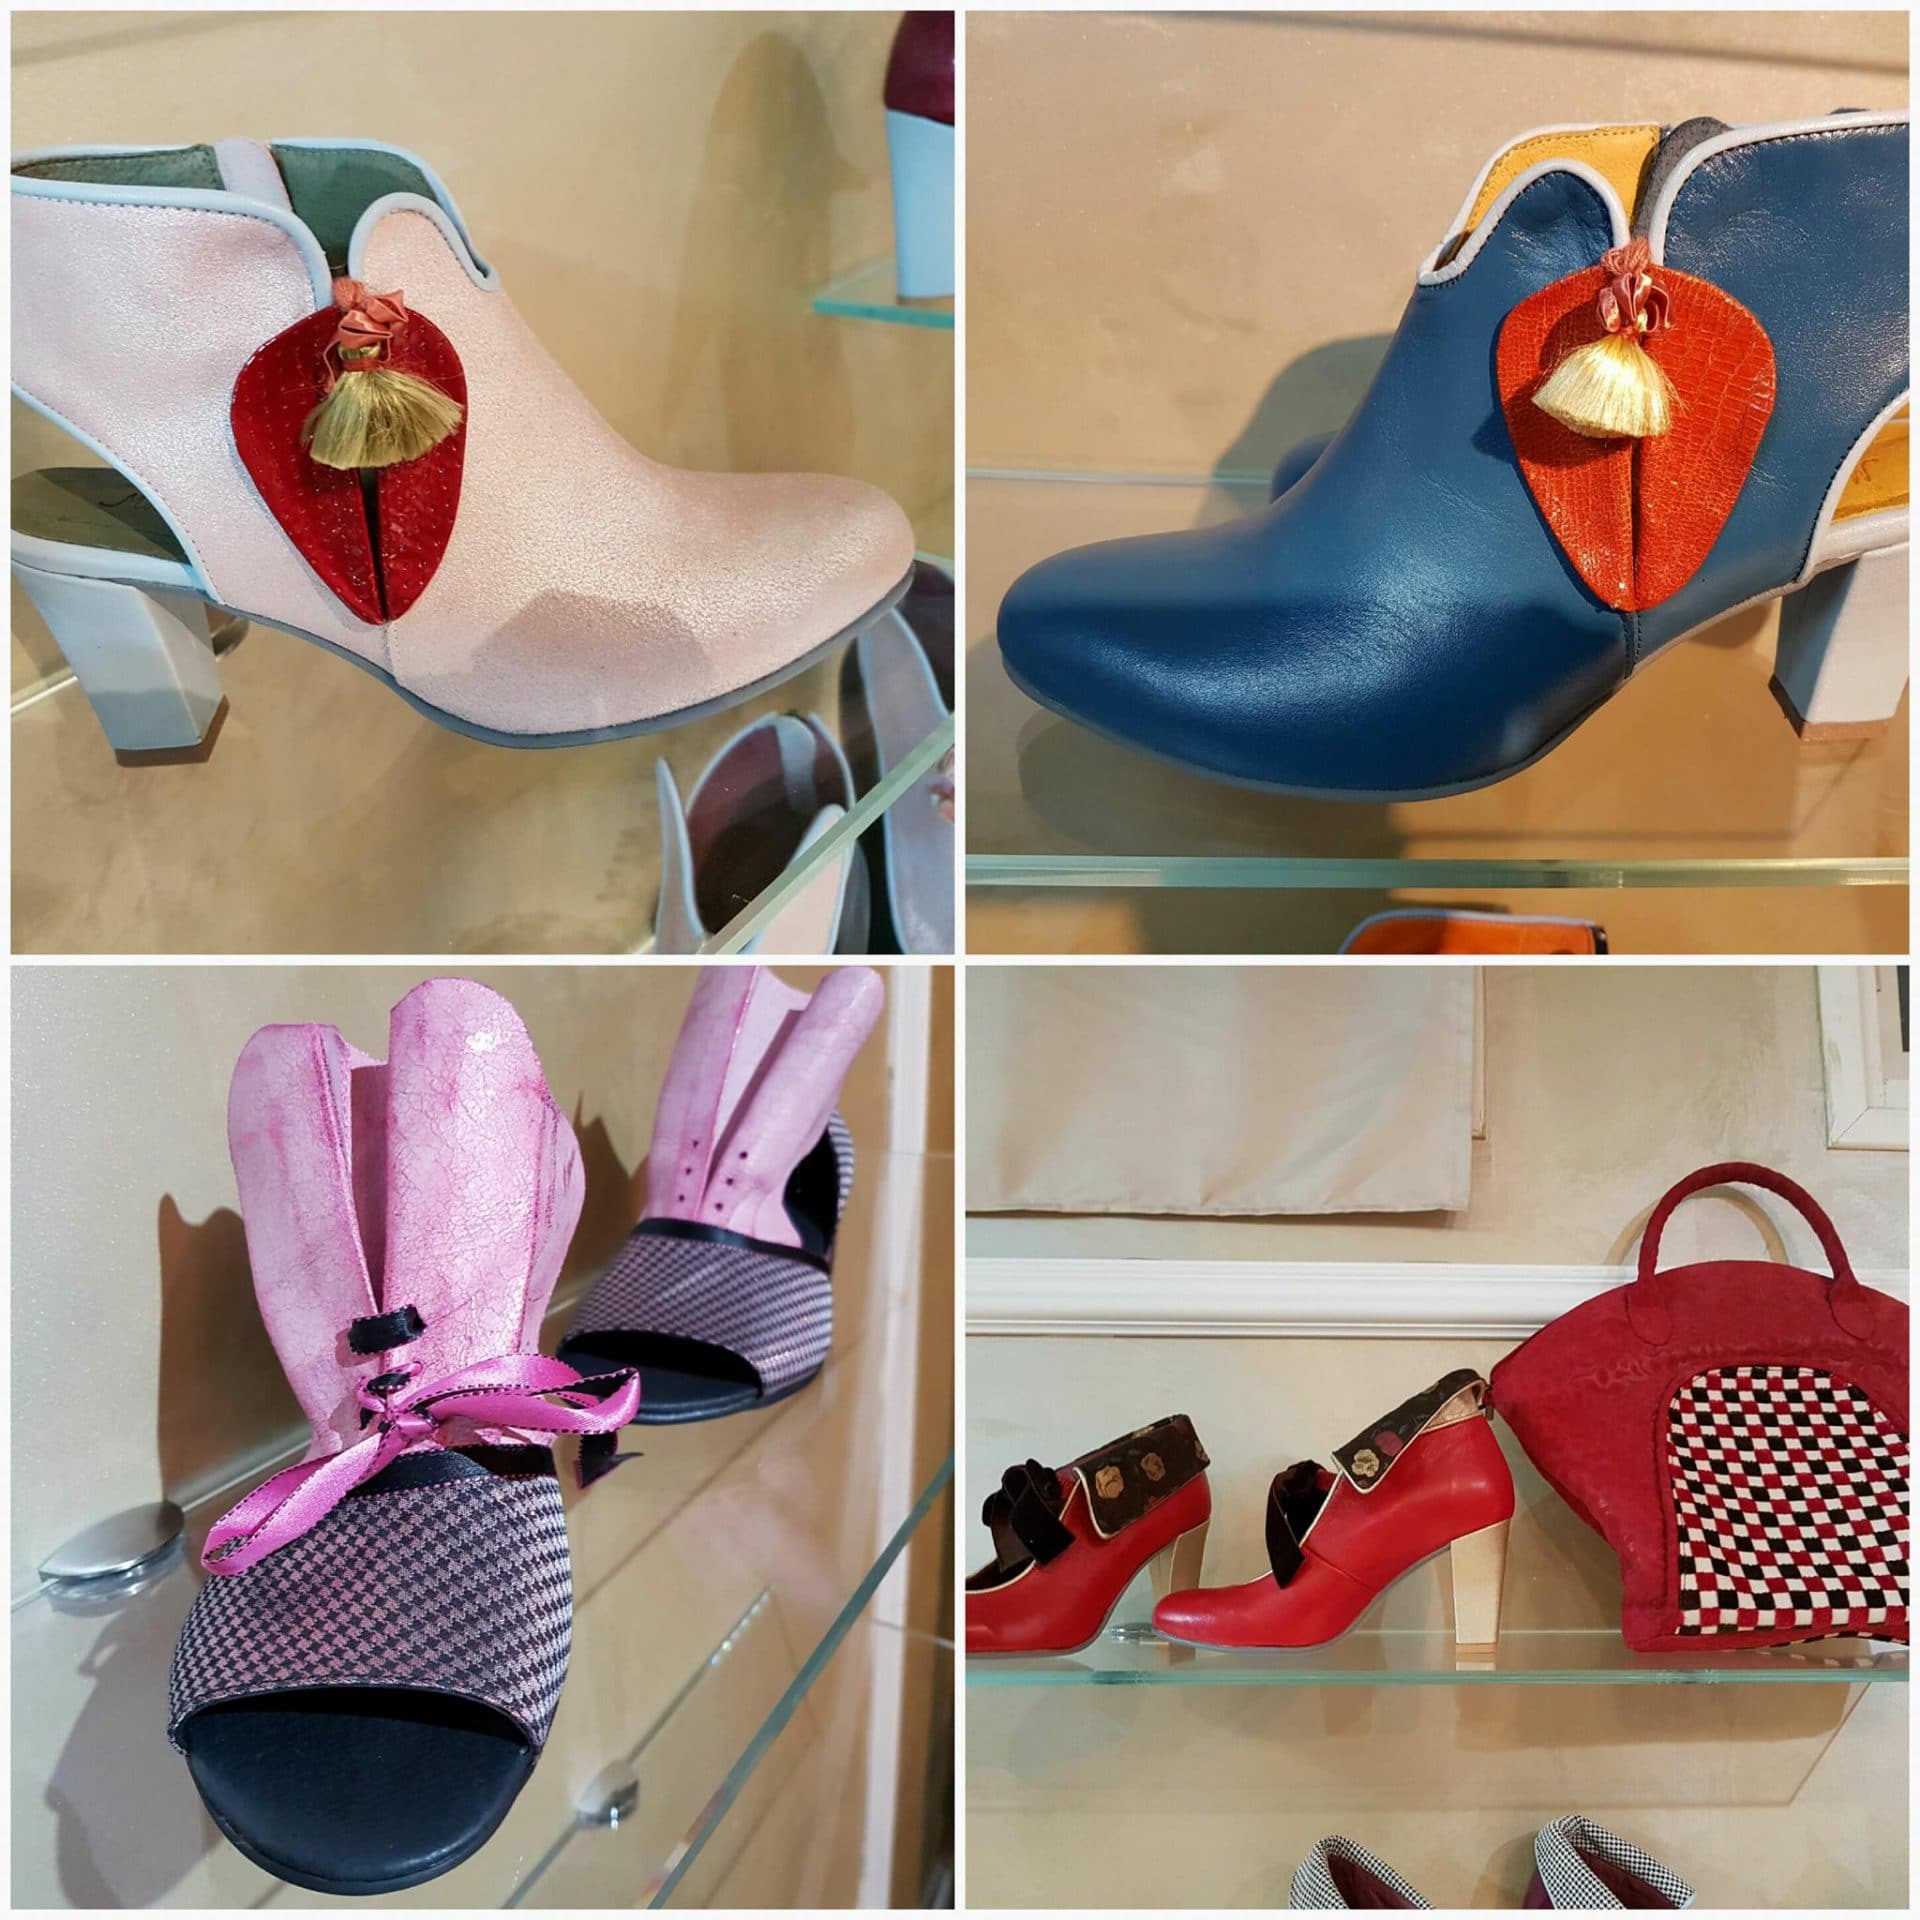 נעליים מיוחדות - נעלי נשים מיקה דרימר